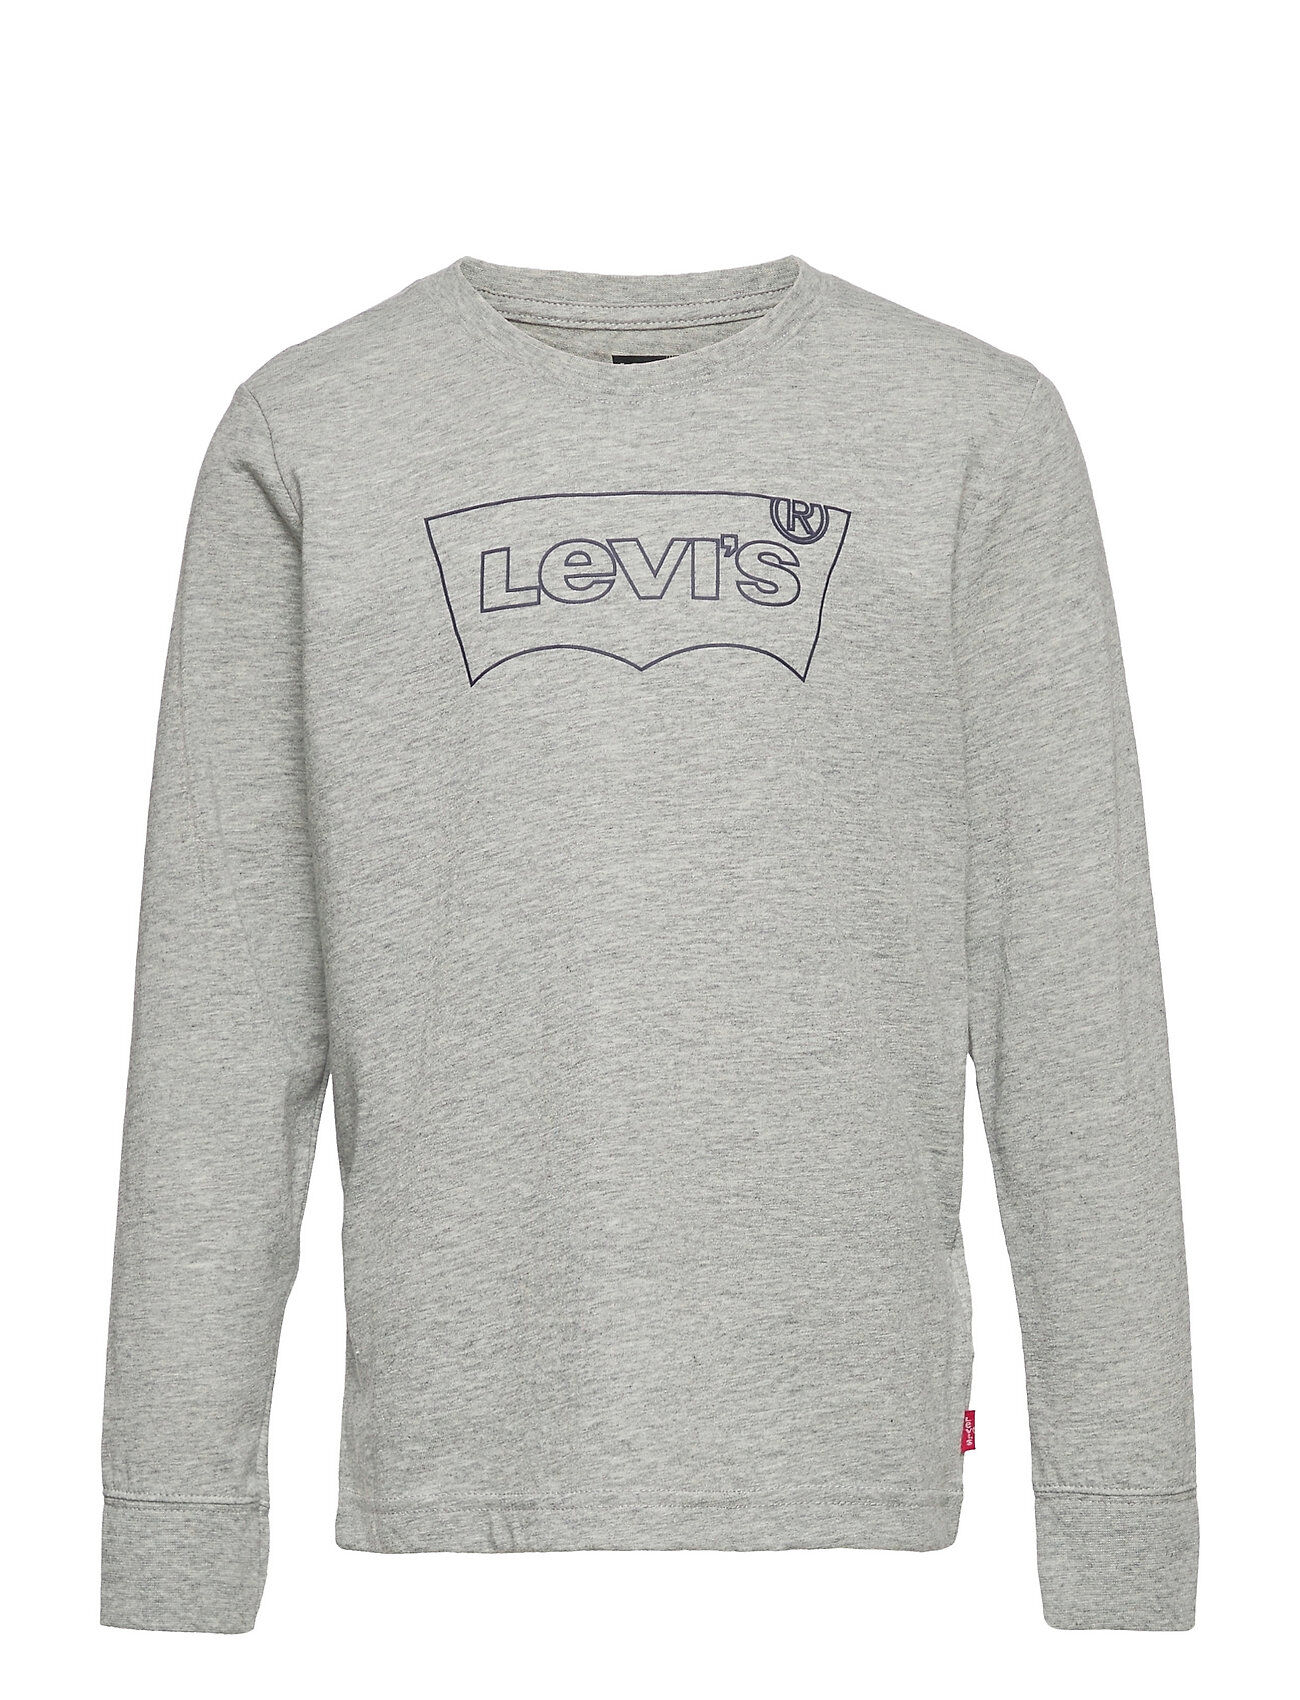 Levi's Lvb Ls Graphic Tee Shirt T-shirts Long-sleeved T-shirts Grå Levi's